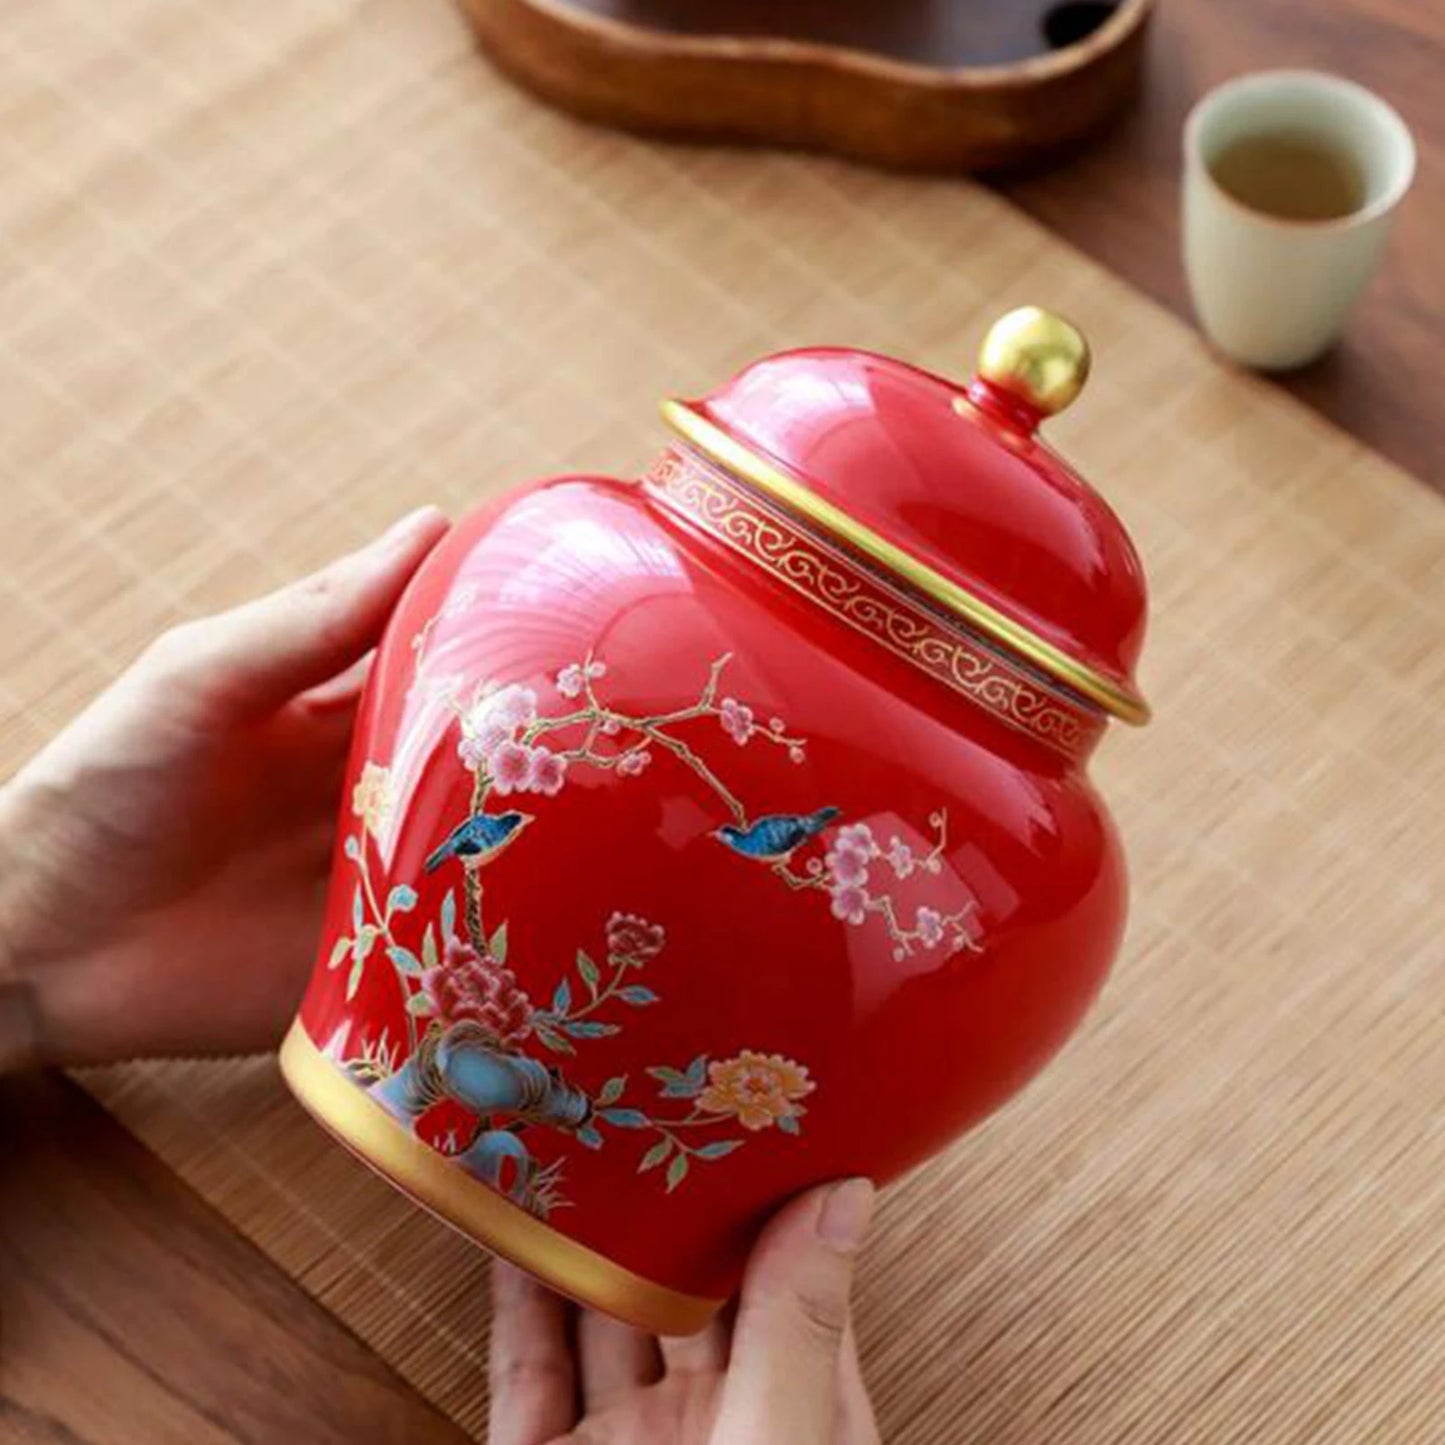 Alter chinesischer Stil, kreatives Porzellan-Ingwerglas, dekorative Keramik-Blumenvase, Tischdekoration, Blumenarrangement für Café